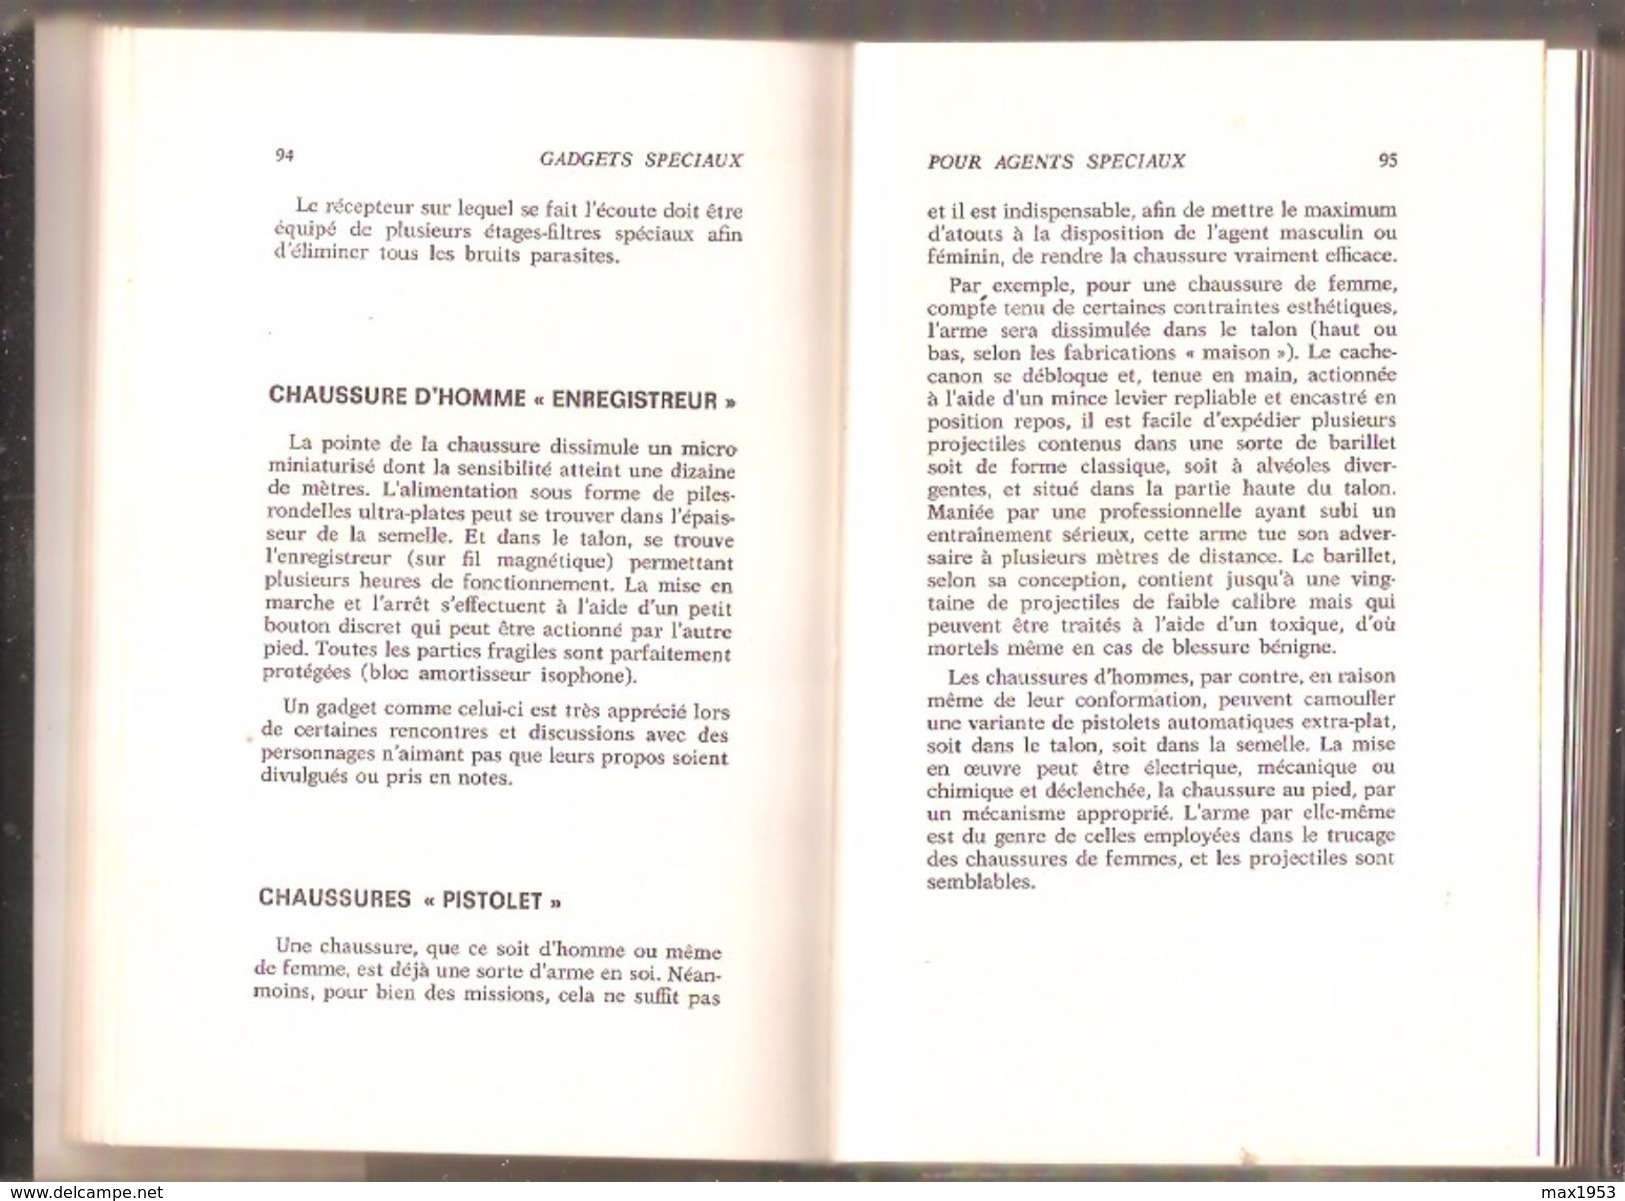 COLONEL X - GADGETS SPECIAUX POUR AGENTS SPECIAUX - Editions De L'Arabesque, Paris, 1968 - Editions De L'Arabesque